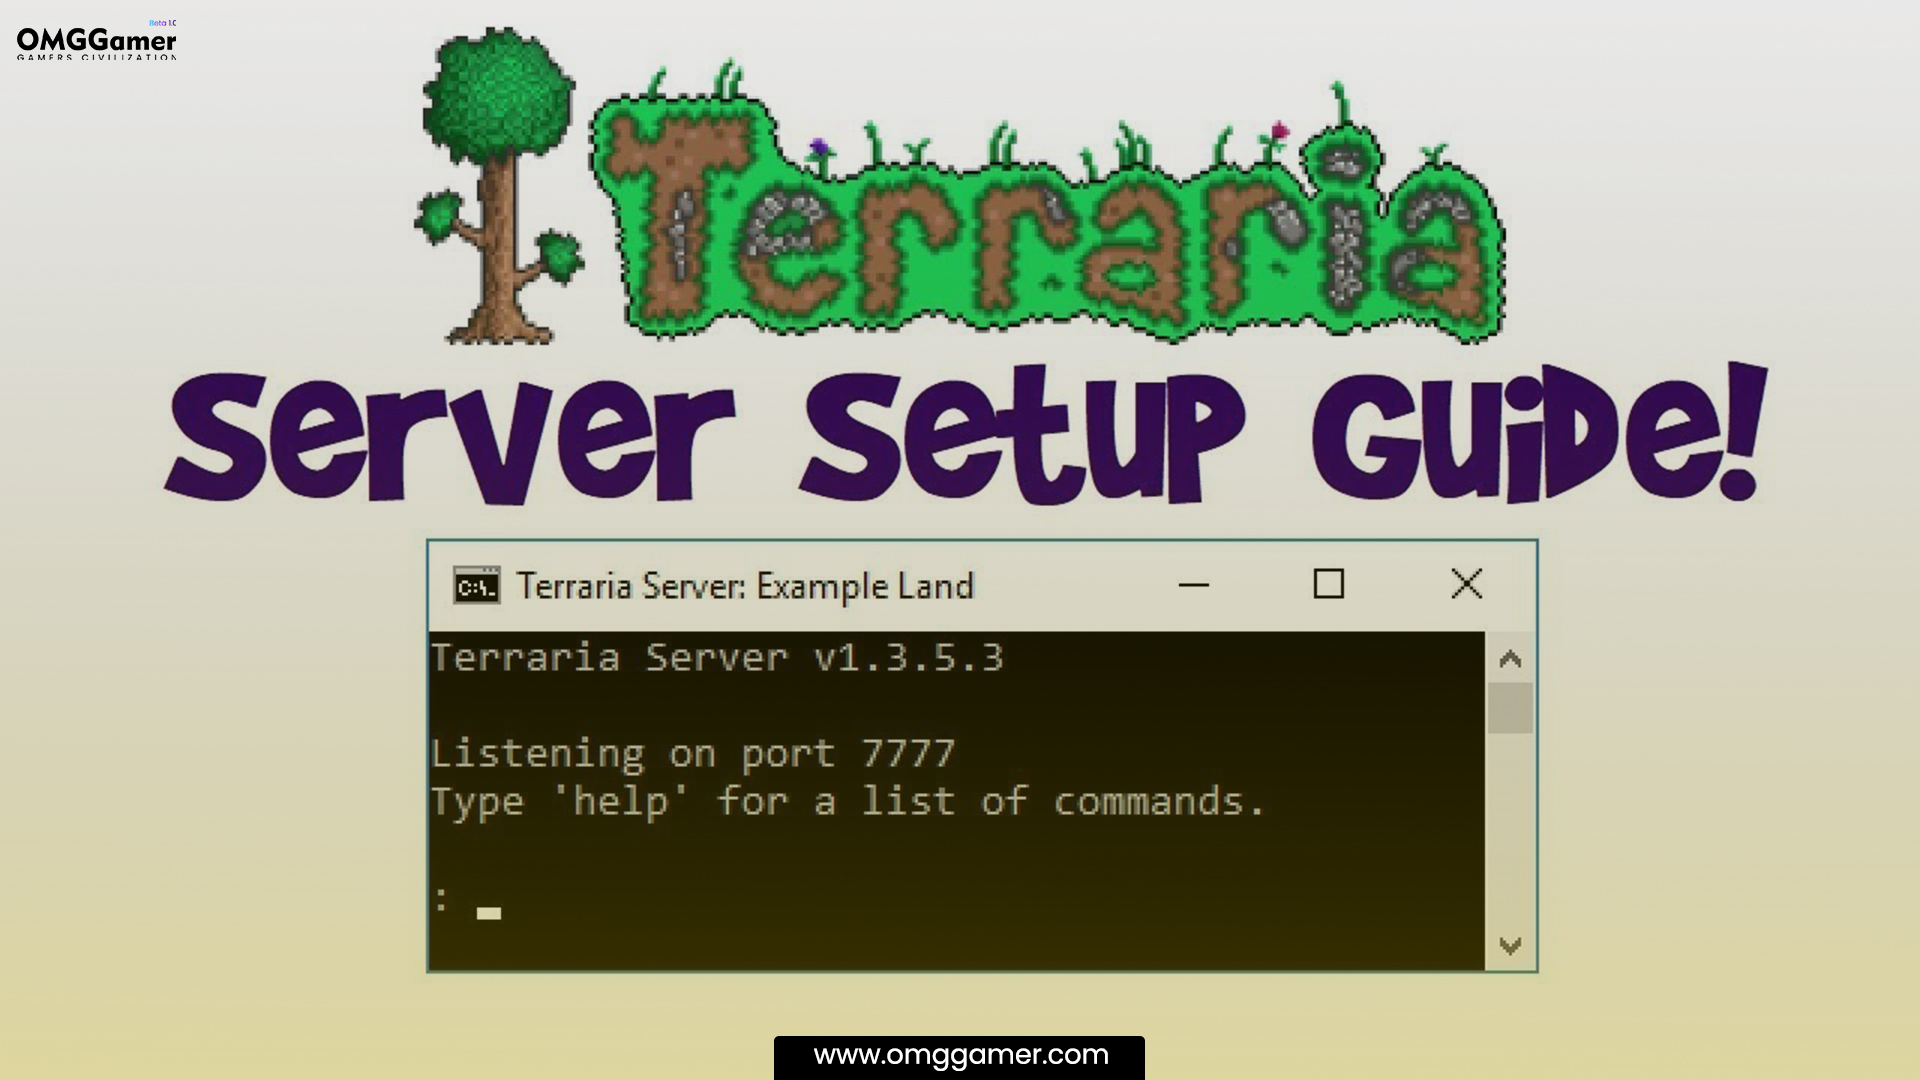 How to set up a dedicated Terraria Server